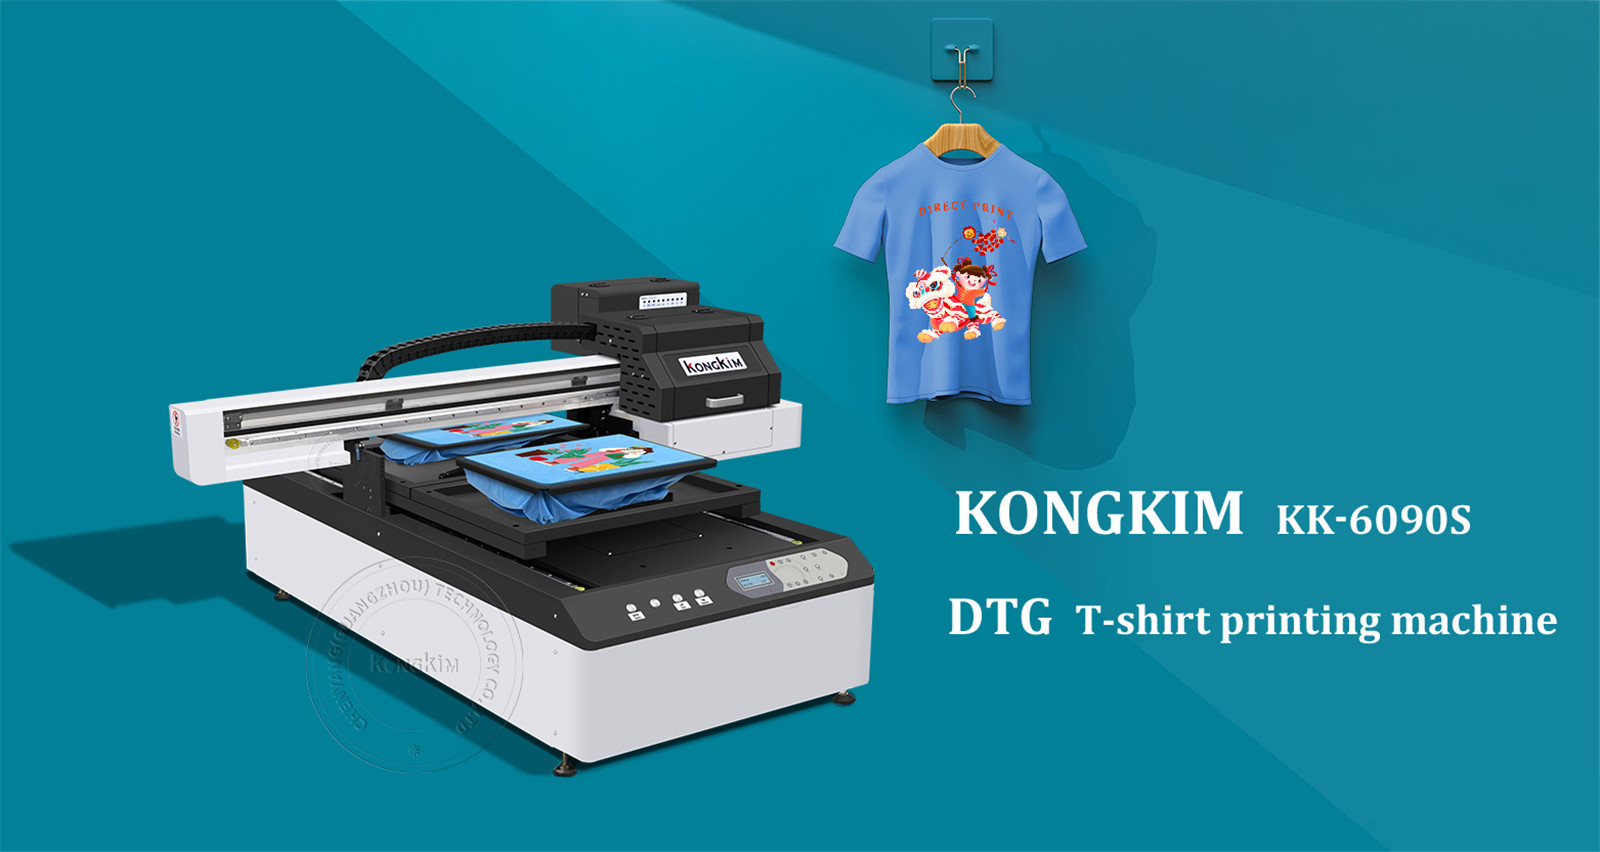 เครื่องพิมพ์เสื้อยืดดิจิตอล DTG ที่ได้รับการอัพเกรด – เหมาะสำหรับการพิมพ์เสื้อยืดผ้าฝ้ายทุกชนิดโดยตรง-02